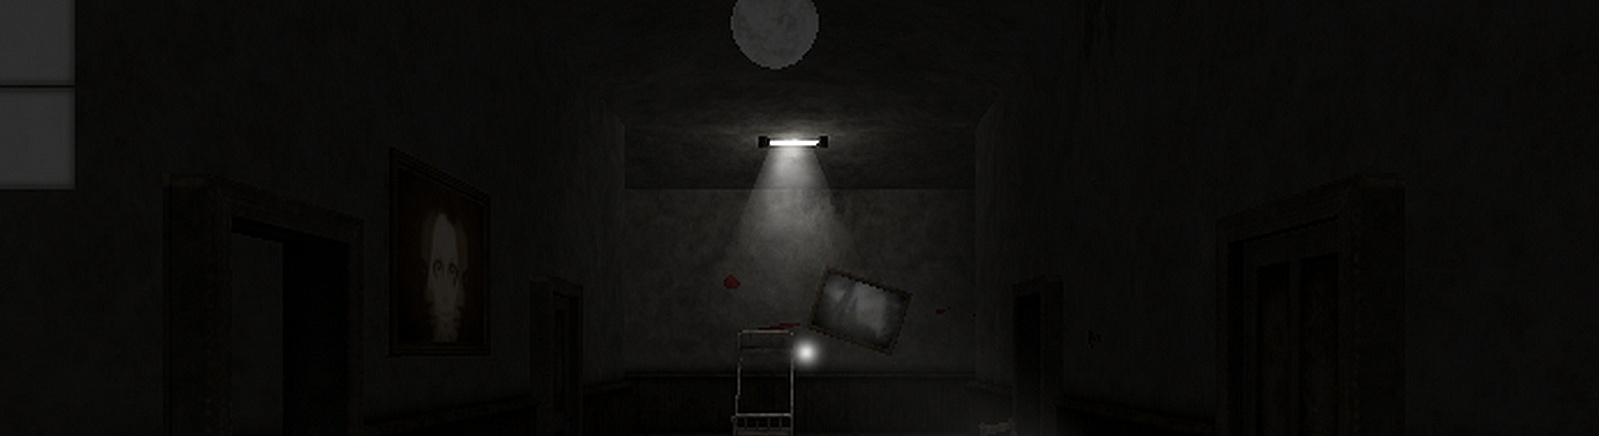 Дата выхода Sanity - Escape From Haunted Asylum 3D Horror Game  на Android в России и во всем мире